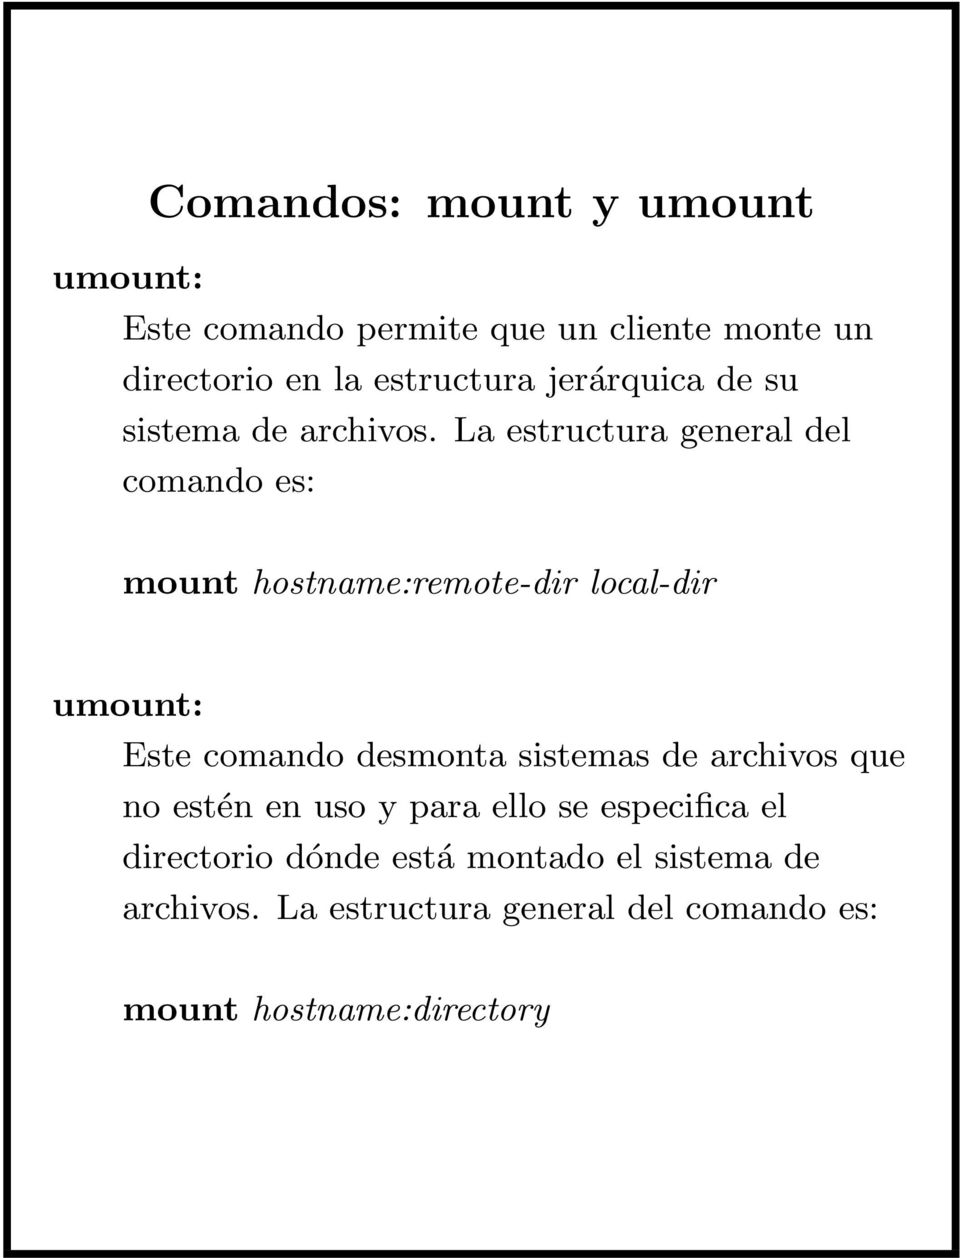 La estructura general del comando es: mount hostname:remote-dir local-dir umount: Este comando desmonta